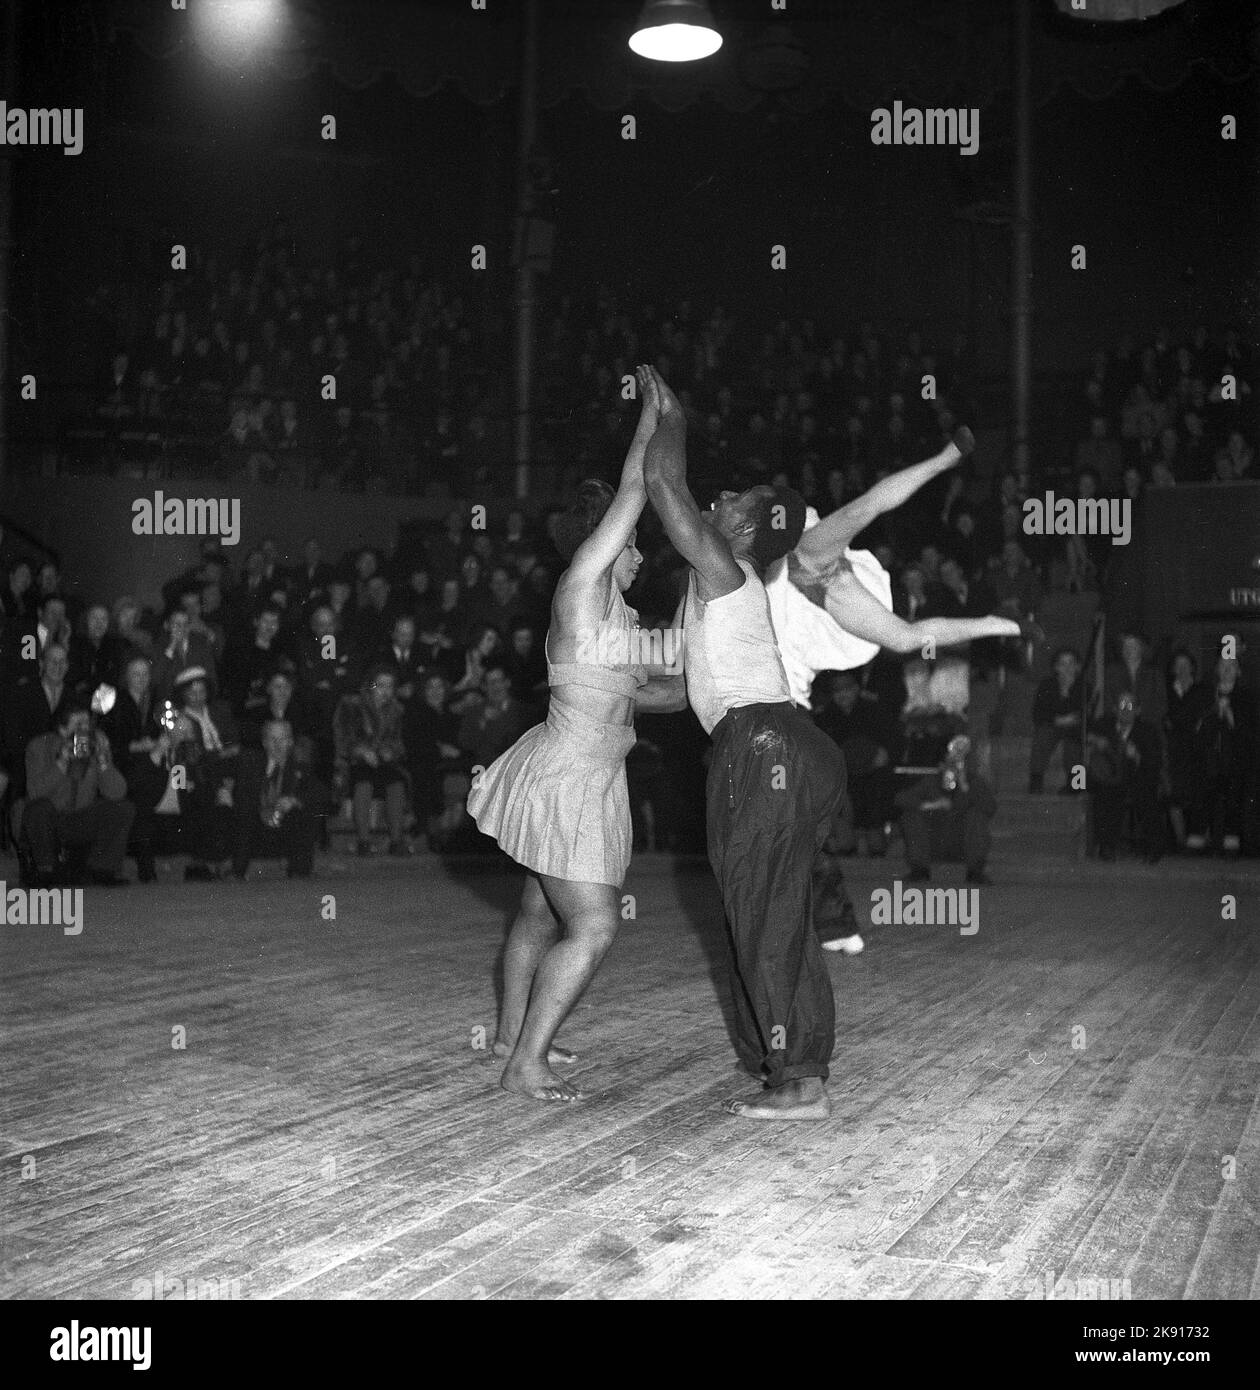 Tanzen in der 1940s. Performance-Tänzer auf der Tanzfläche bei einer Show, bei der Tanz und Schauspiel kombiniert werden. Zu dieser Zeit im Jahr 1940s war der Tanz Jitterbug populär. Schweden 1947. Kristoffersson Ref. Z41-5 Stockfoto